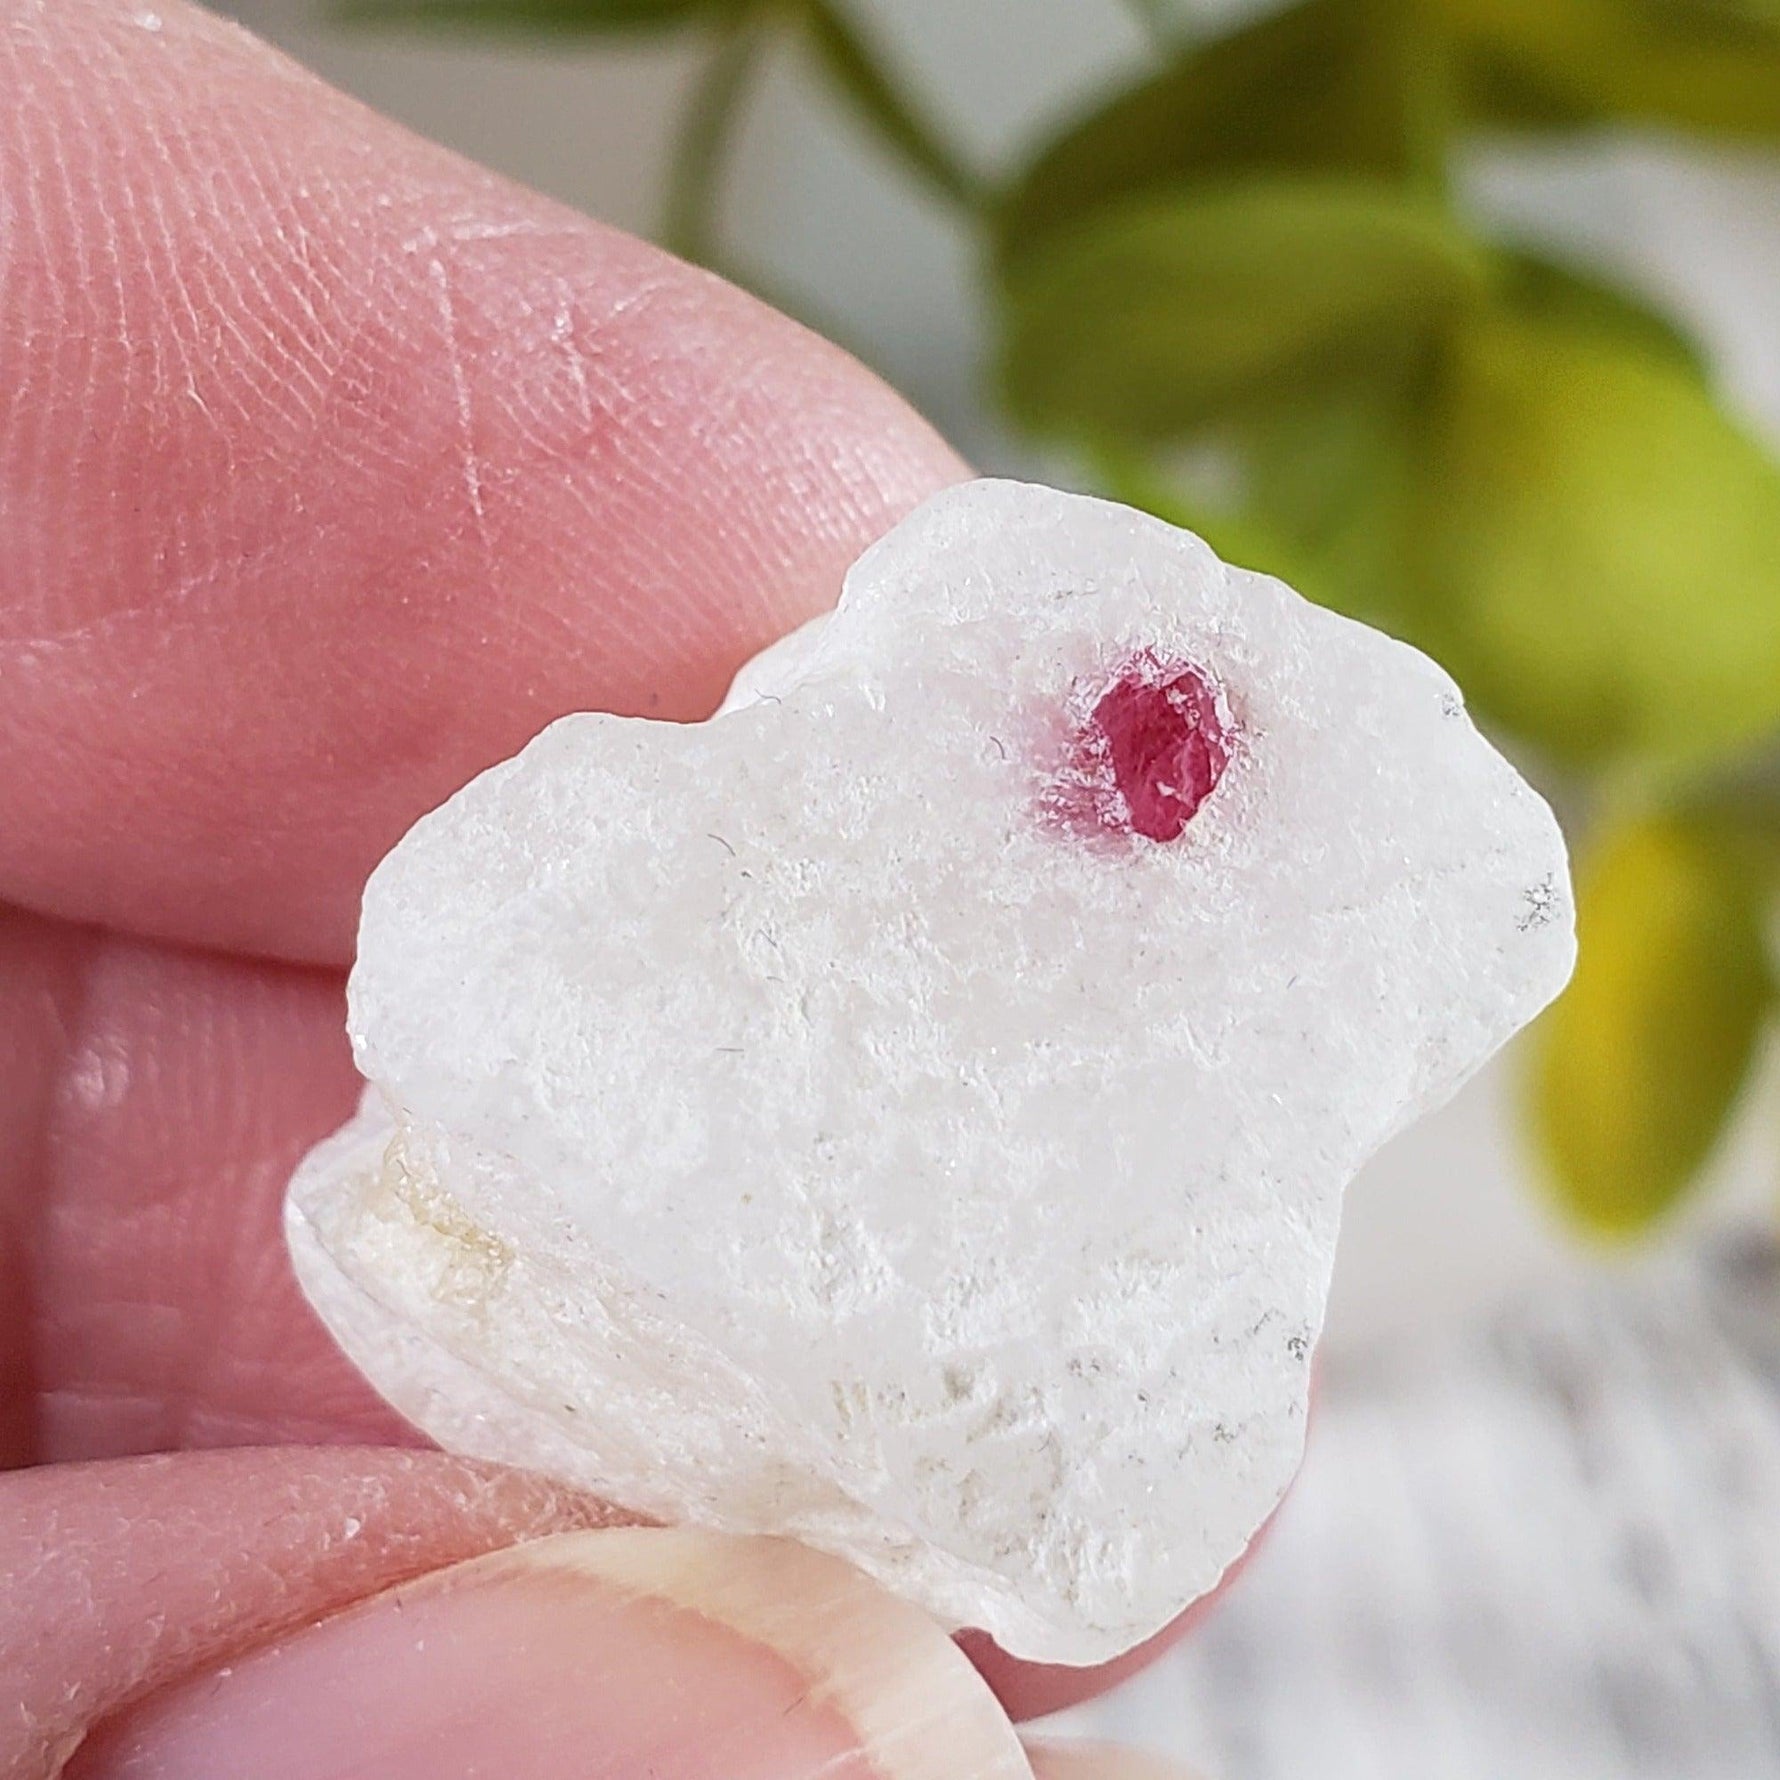 Spinel Crystal in Marble Host | Red Spinel | 9 gr, 45.6 ct | Mogok, Myanmar